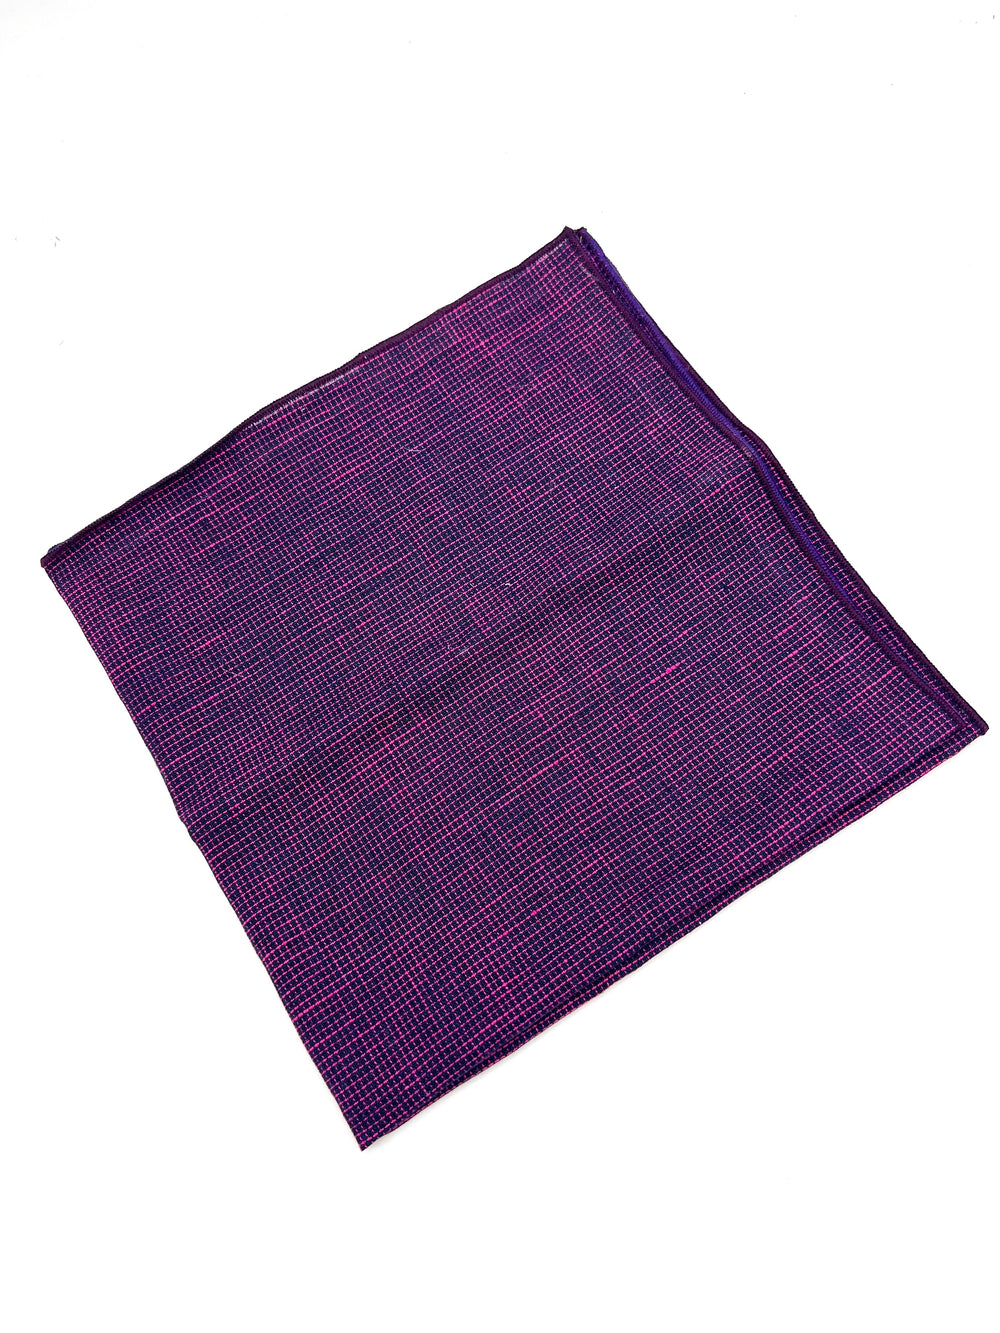 The Casso Plaid Handkerchief